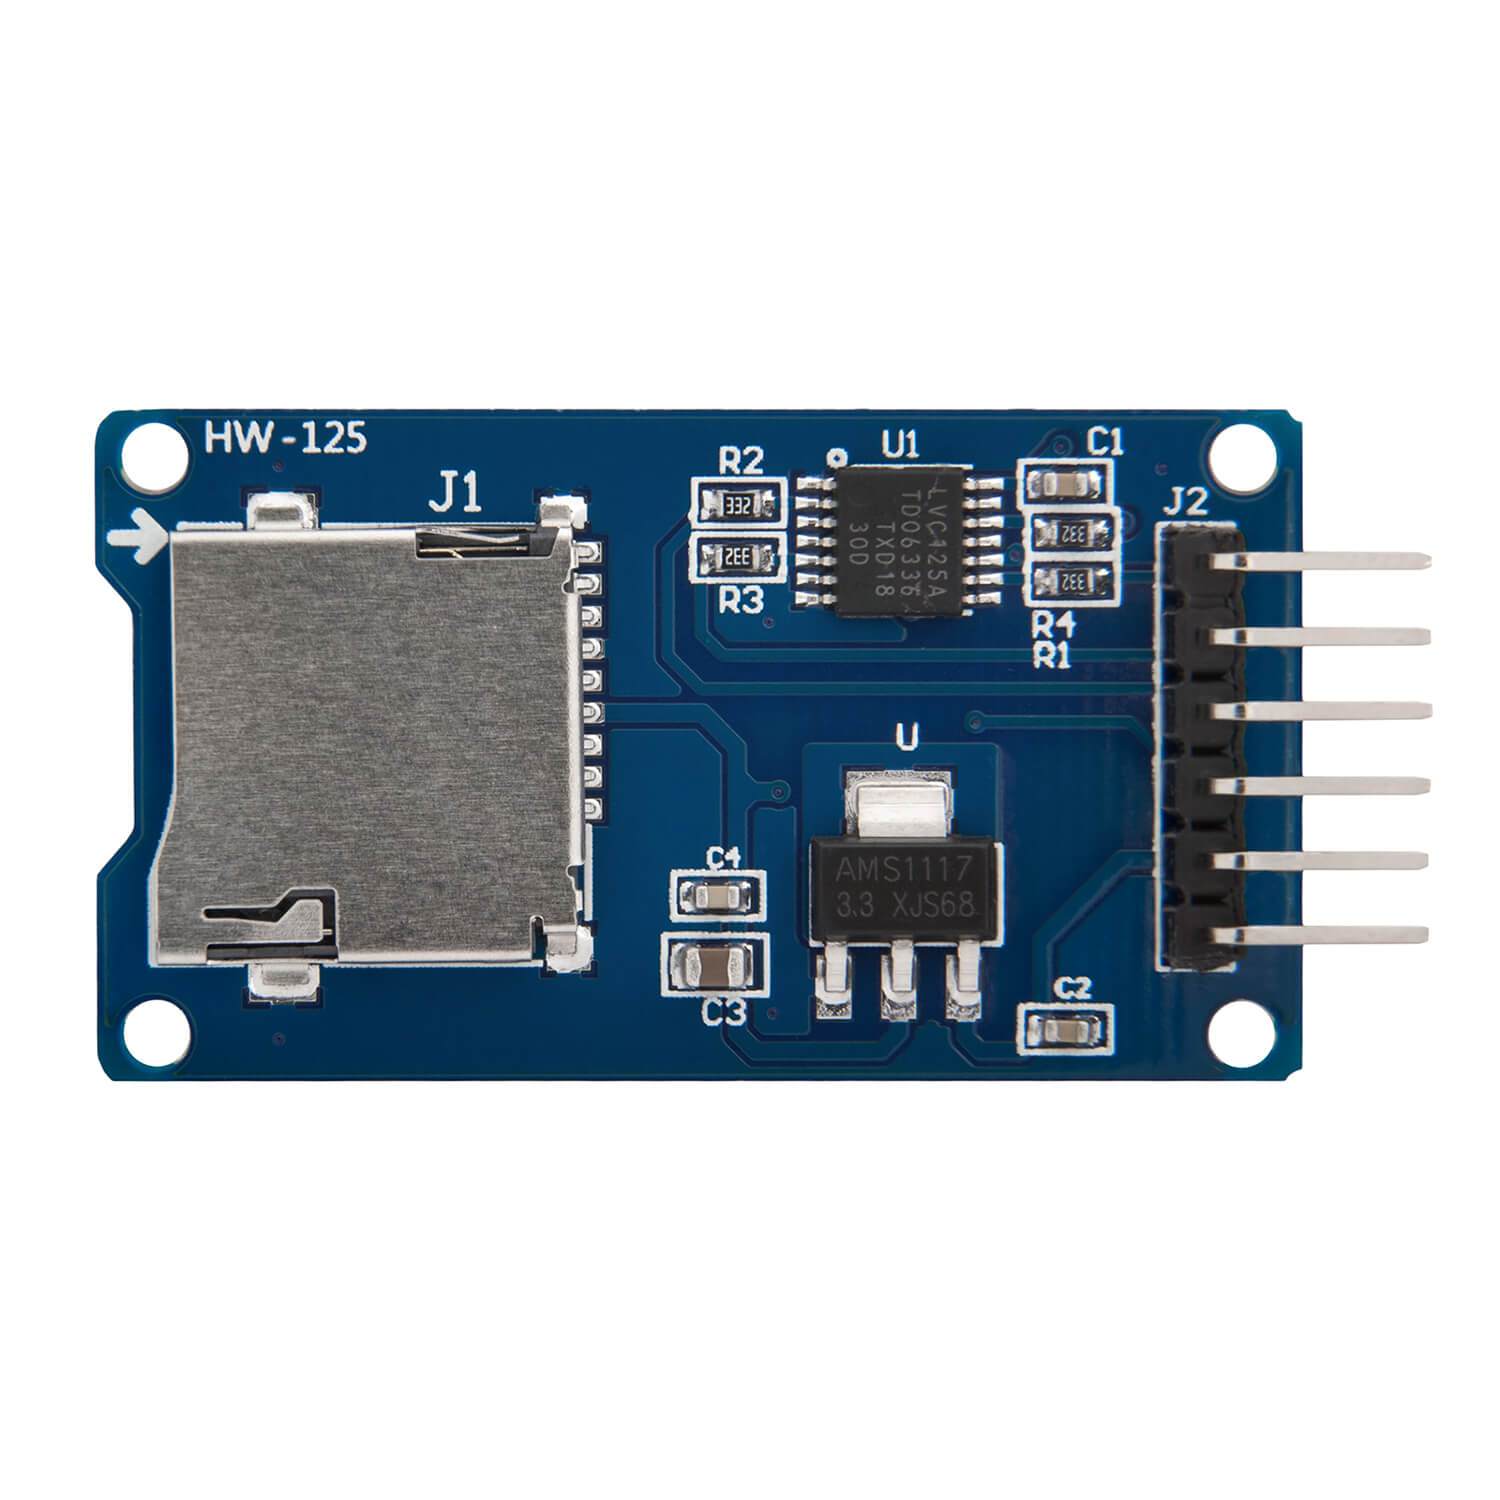 SPI Reader Micro Speicher SD TF Karte Memory Card Shield Modul - AZ-Delivery